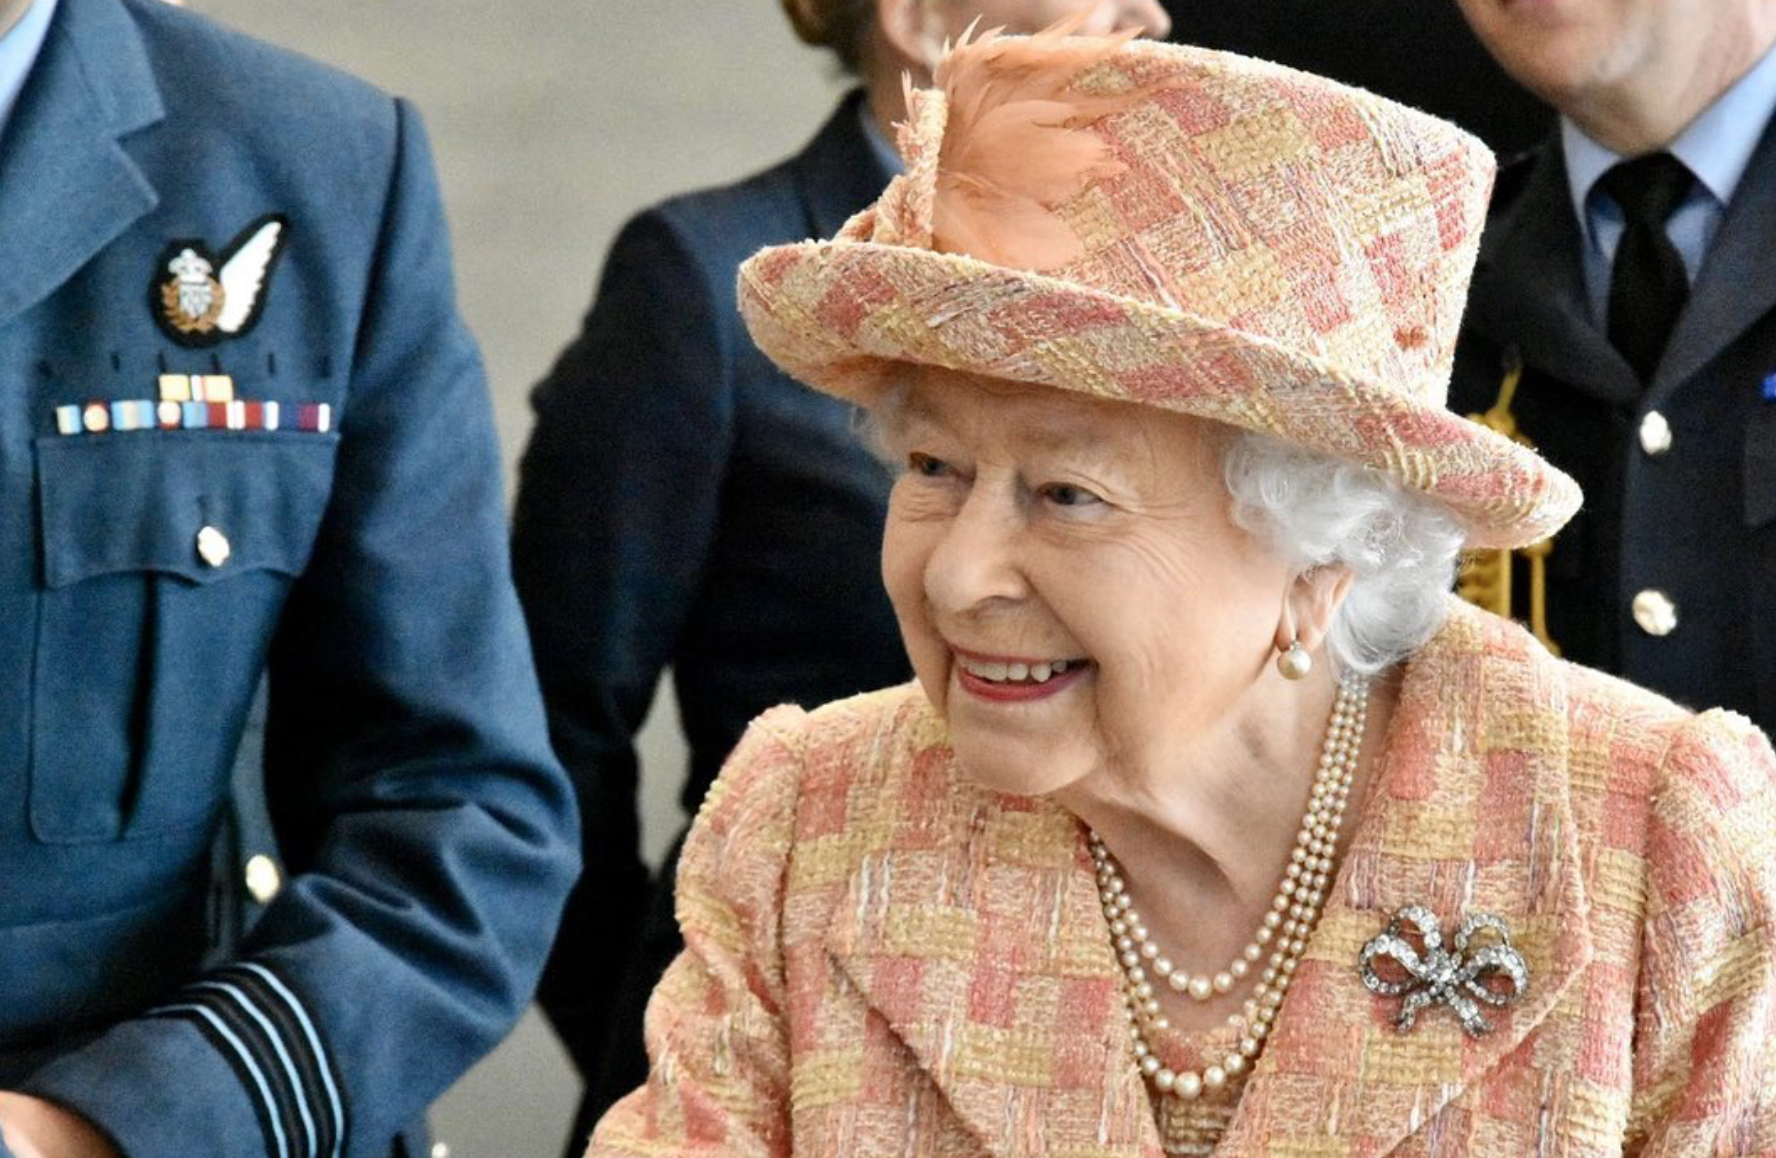 La Regina Elisabetta si ritira: tutto pronto per la rinuncia al Trono